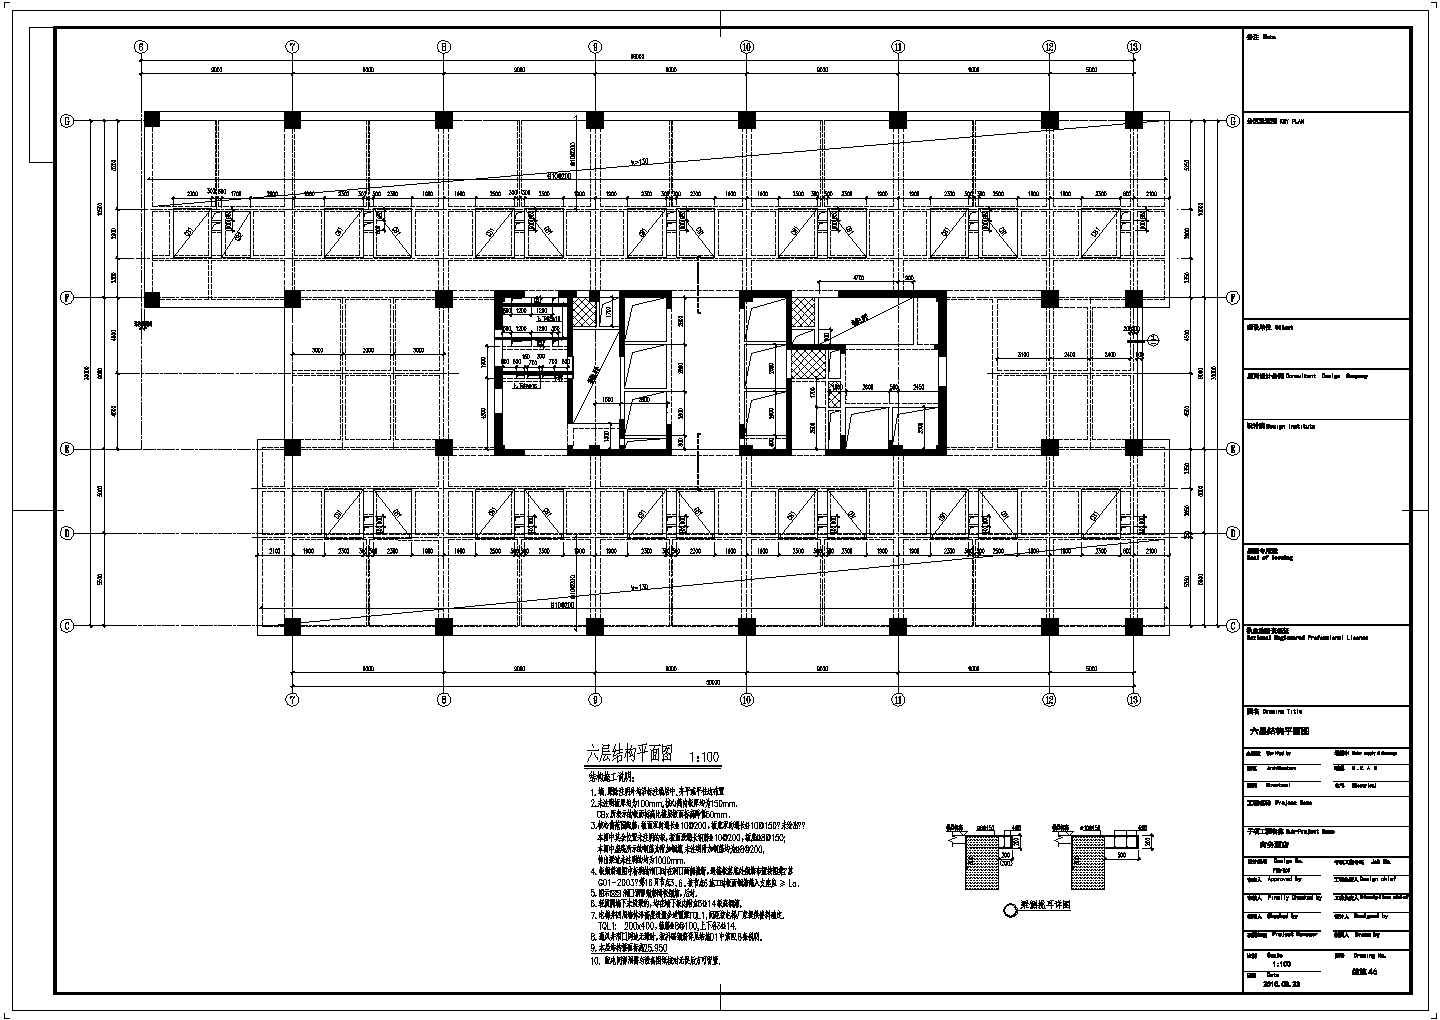 23层局部型钢混凝土斜柱框架核心筒结构商务酒店结构施工图（含建施）